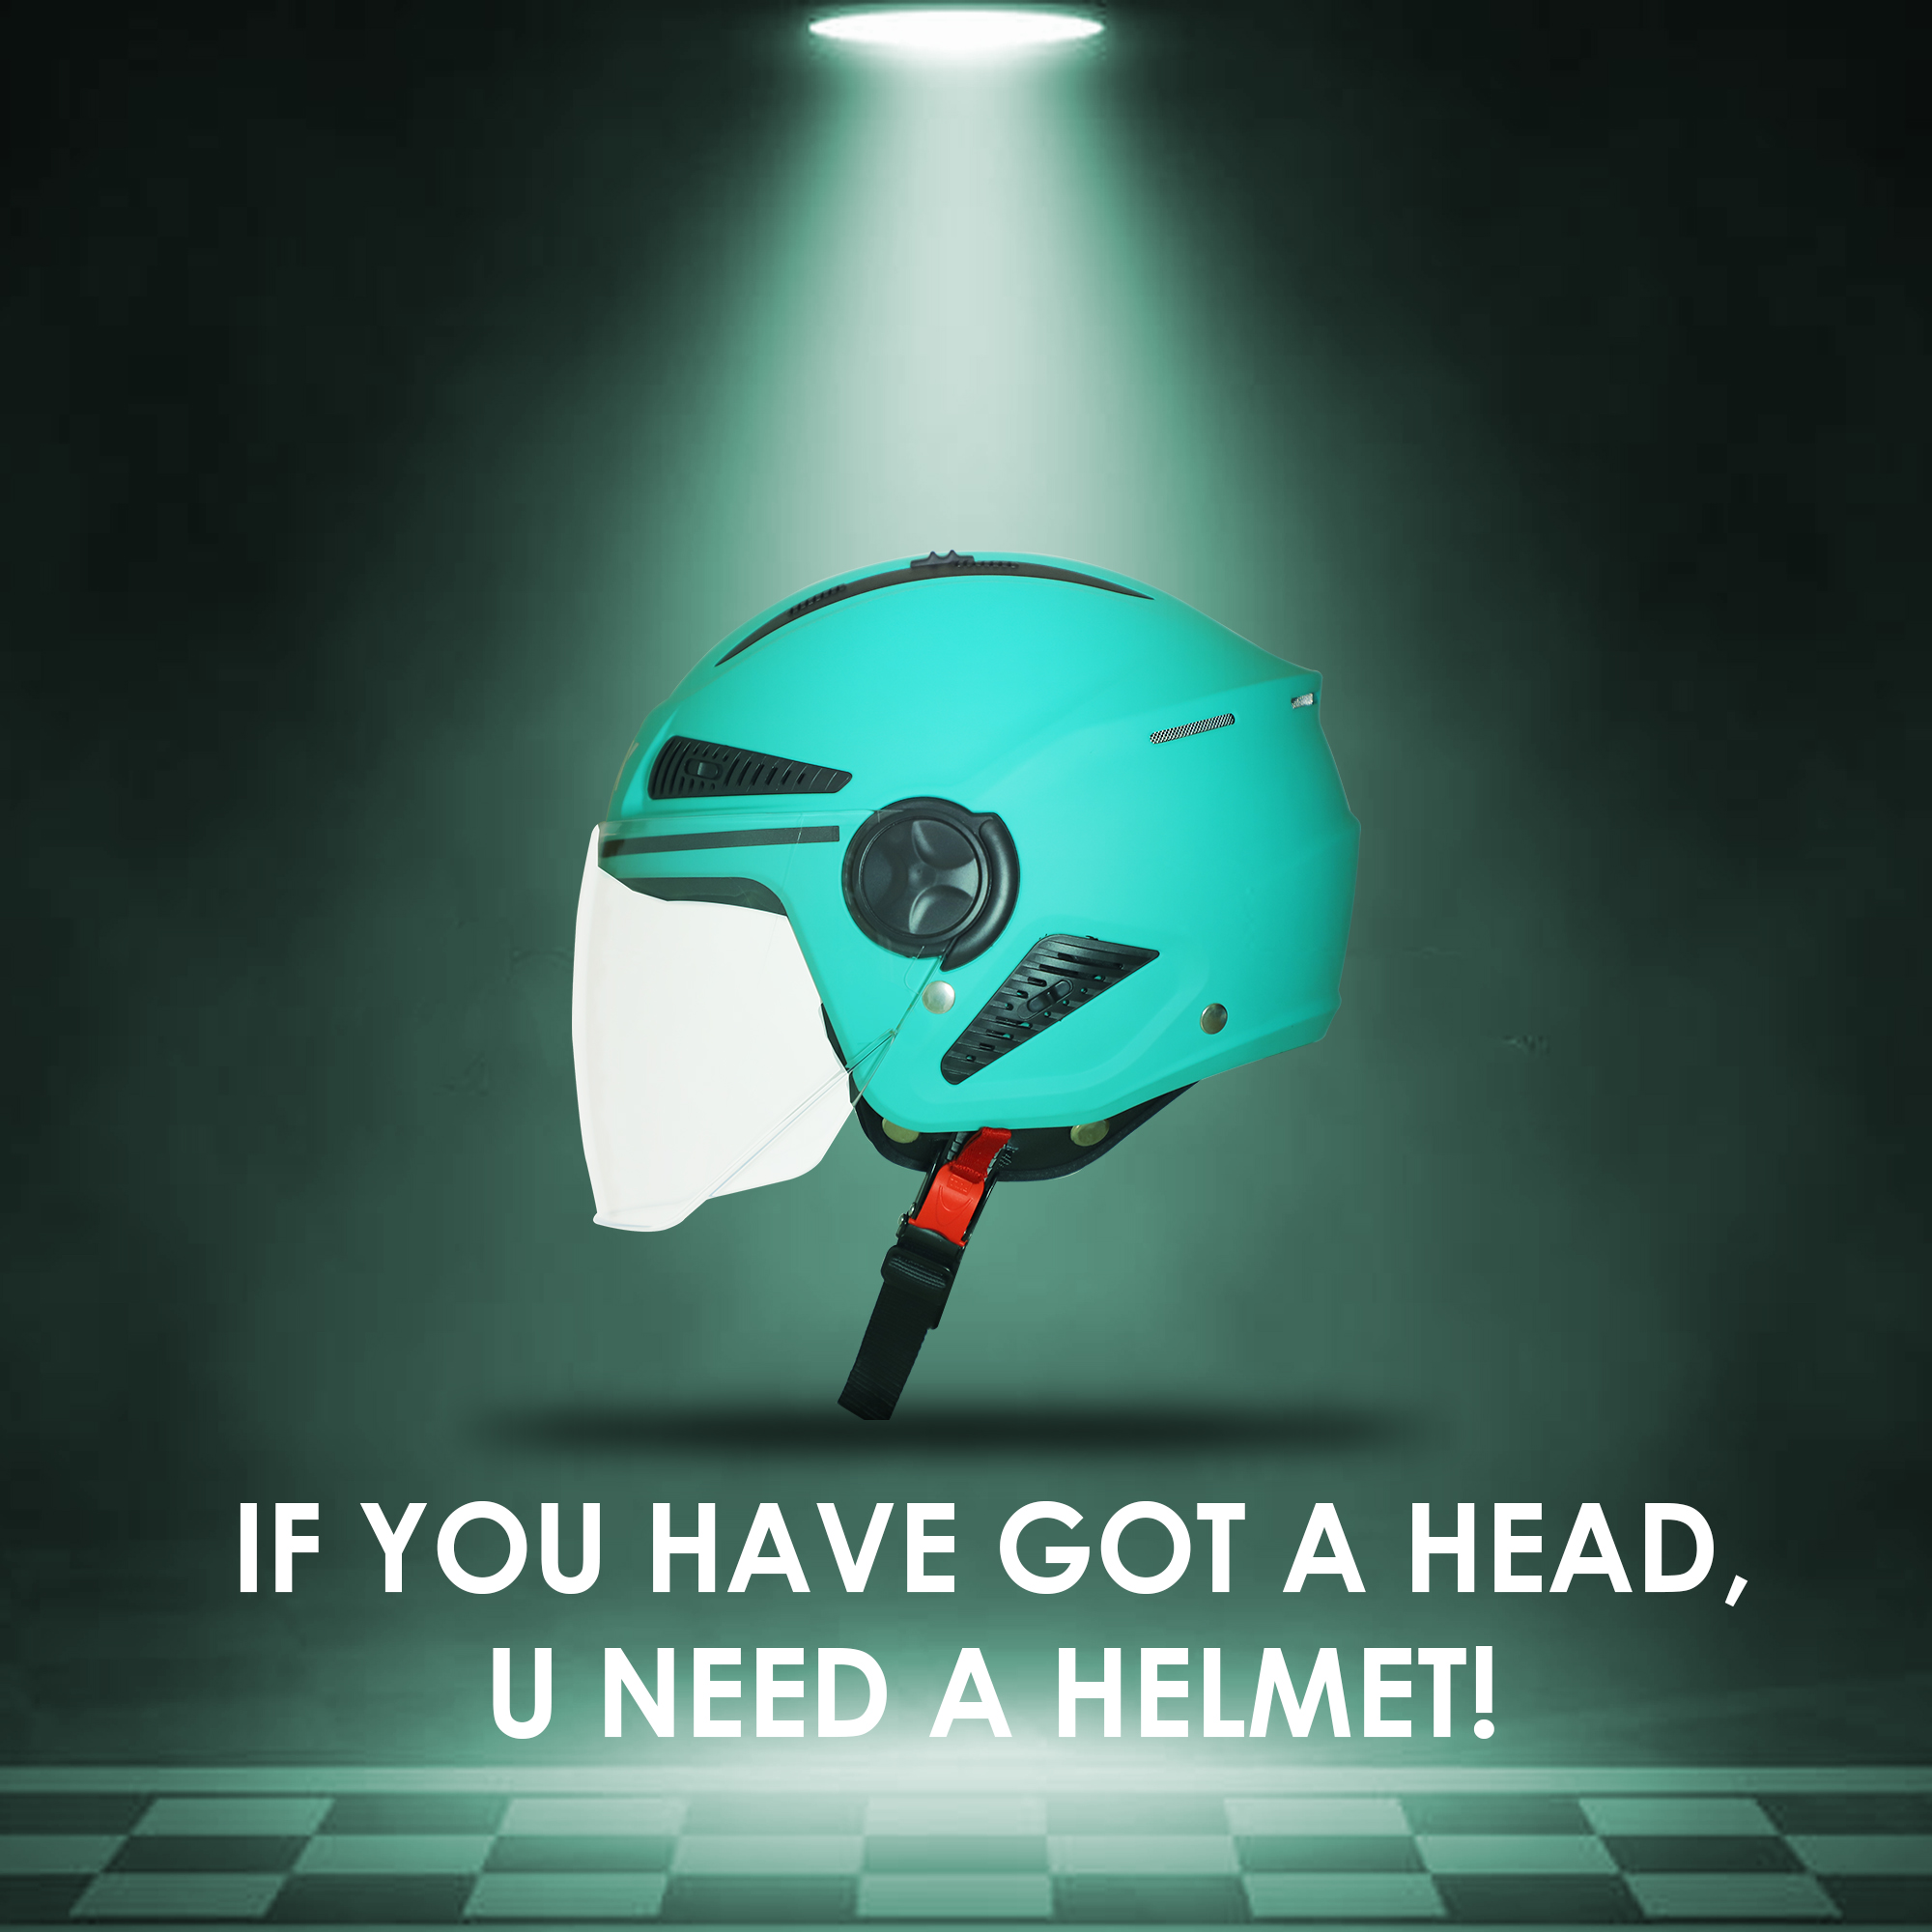 Steelbird SBH-24 Boxx ISI Certified Open Face Helmet For Men And Women (Matt Caribbean Green With Clear Visor)